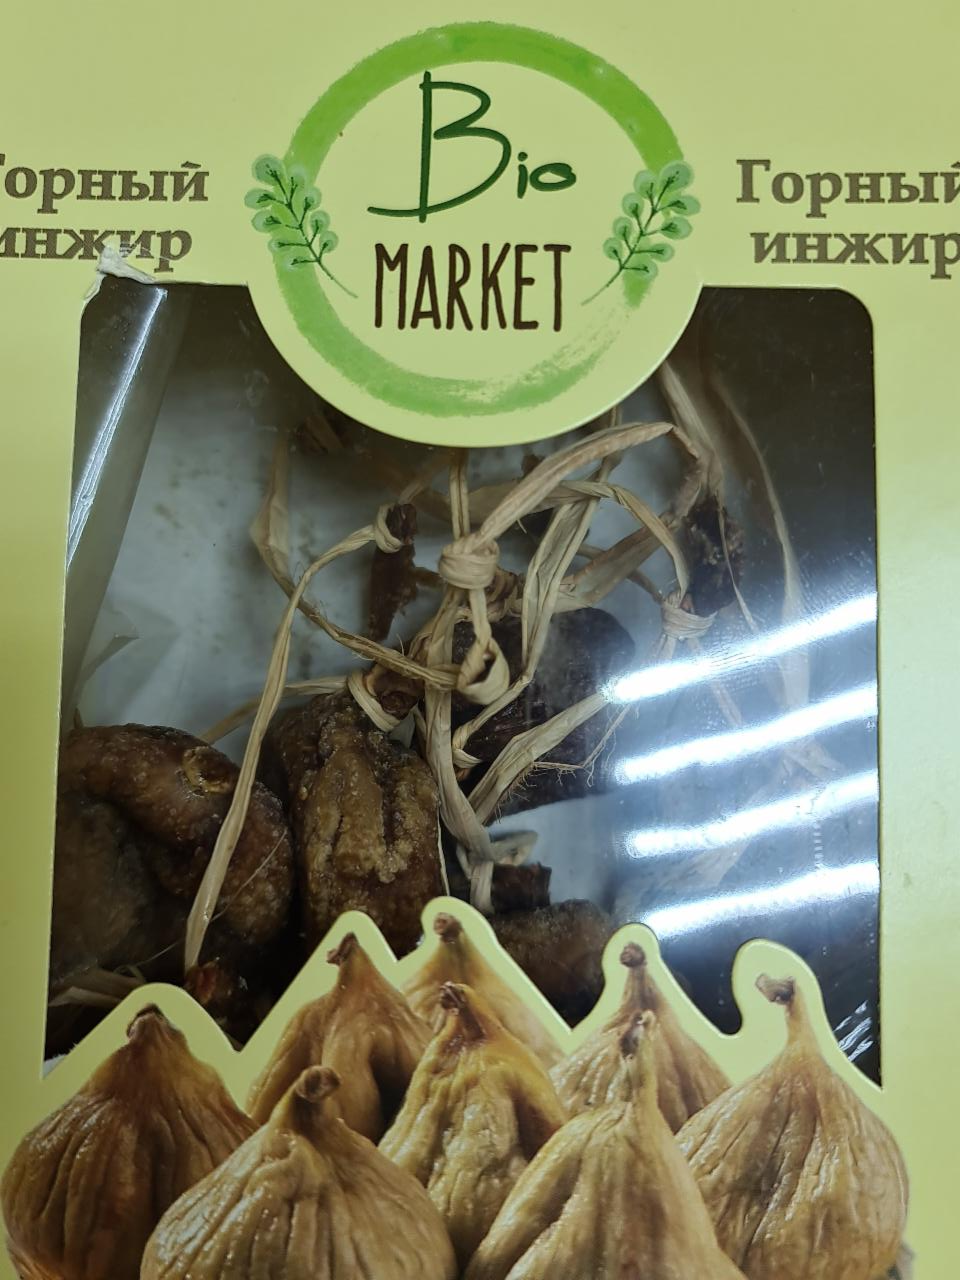 Фото - Горный инжир Bio market